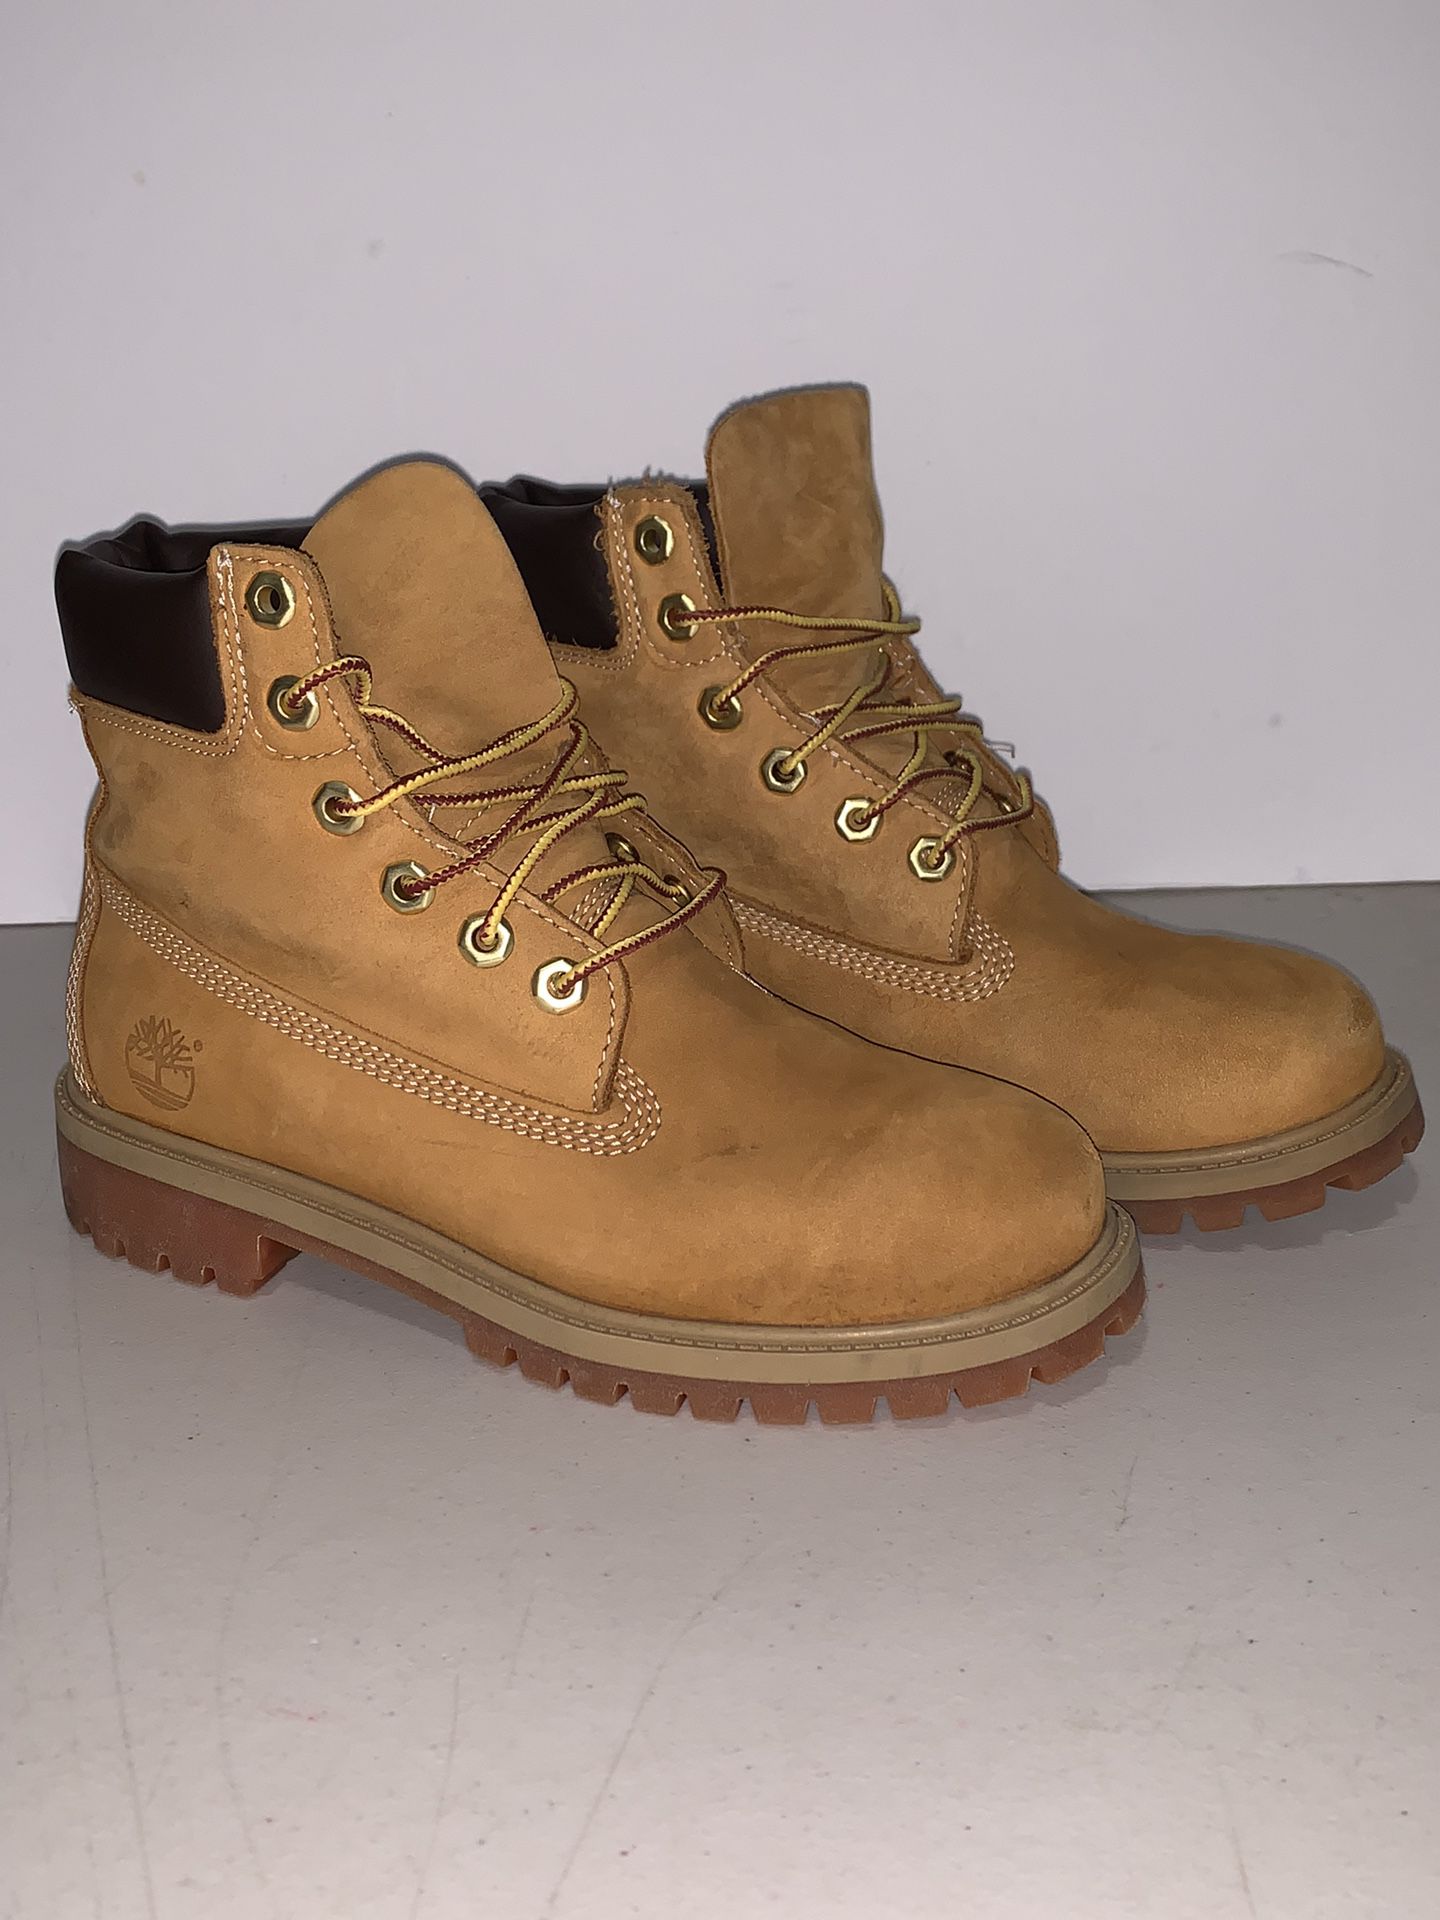 Timberland 12909 Junior’s 6" Premium Waterproof Boots Wheat Nubuck Size 4